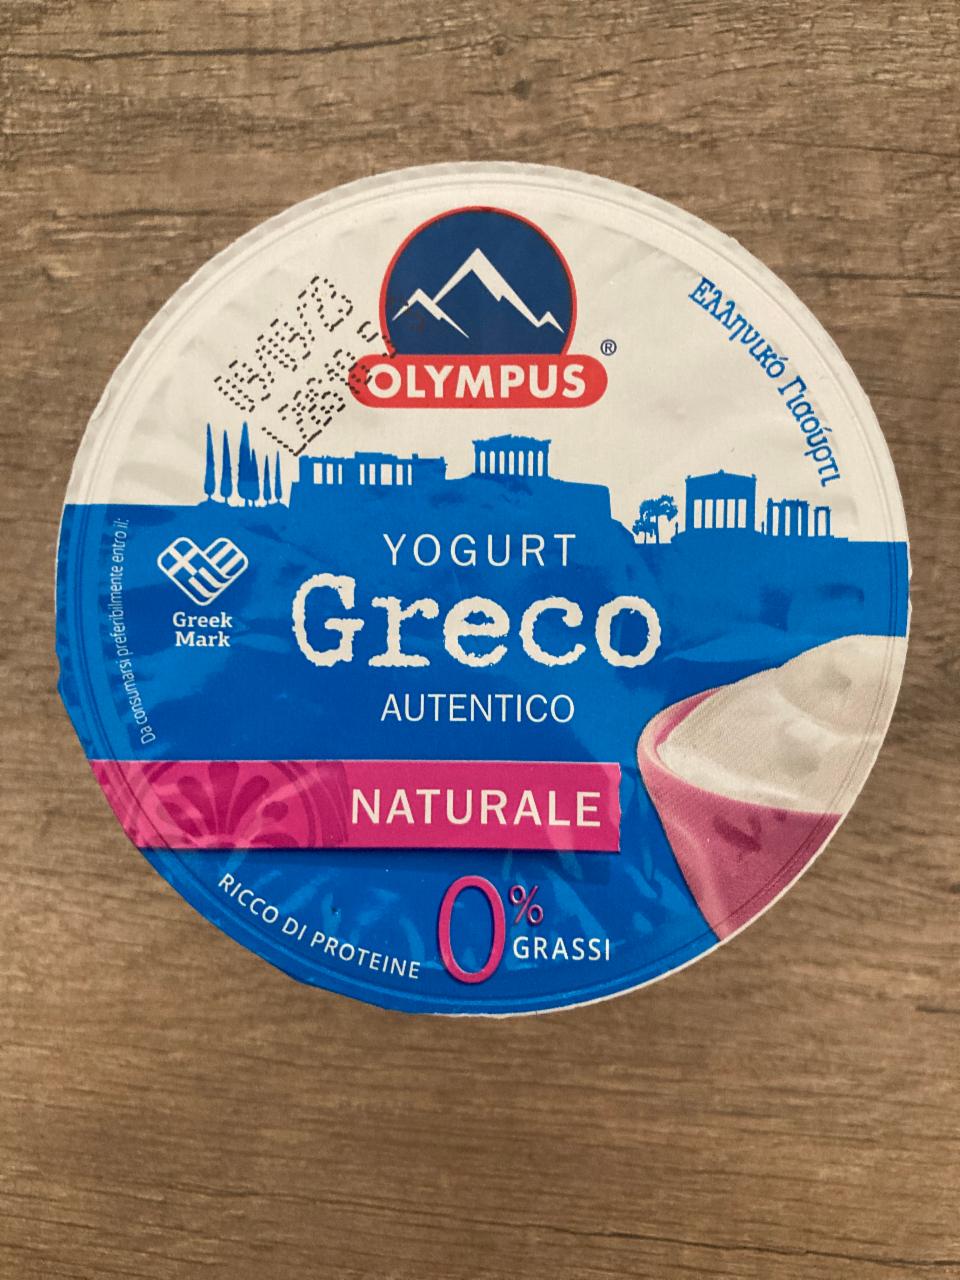 Fotografie - Yogurt Greco Autentico Naturale Olympus